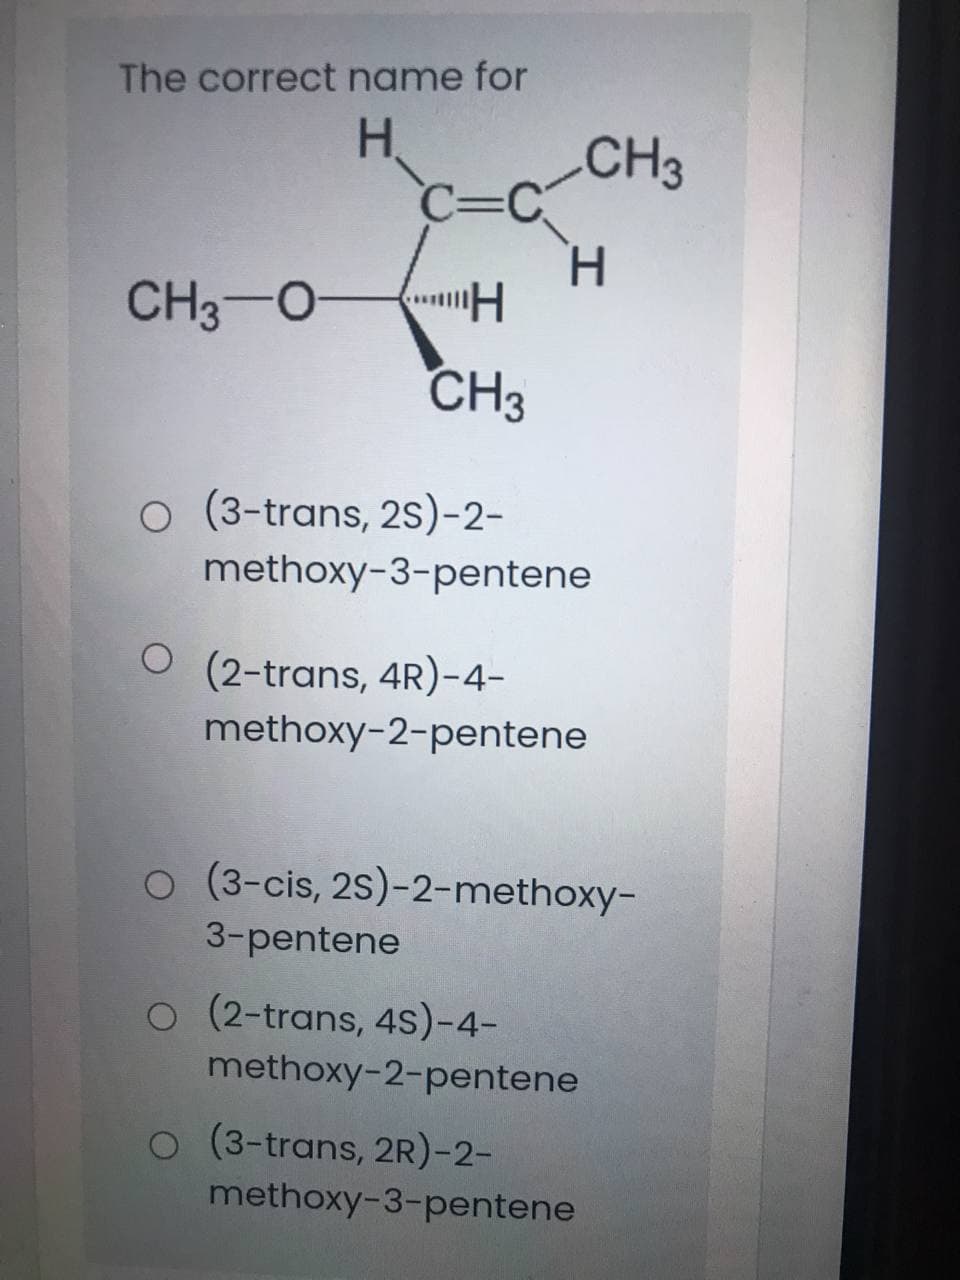 The correct name for
H.
CH3
C=
c3C
H.
CH3-O
CH3
O (3-trans, 2s)-2-
methoxy-3-pentene
O (2-trans, 4R)-4-
methoxy-2-pentene
o (3-cis, 2S)-2-methoxy-
3-pentene
O (2-trans, 4S)-4-
methoxy-2-pentene
O (3-trans, 2R)-2-
methoxy-3-pentene
